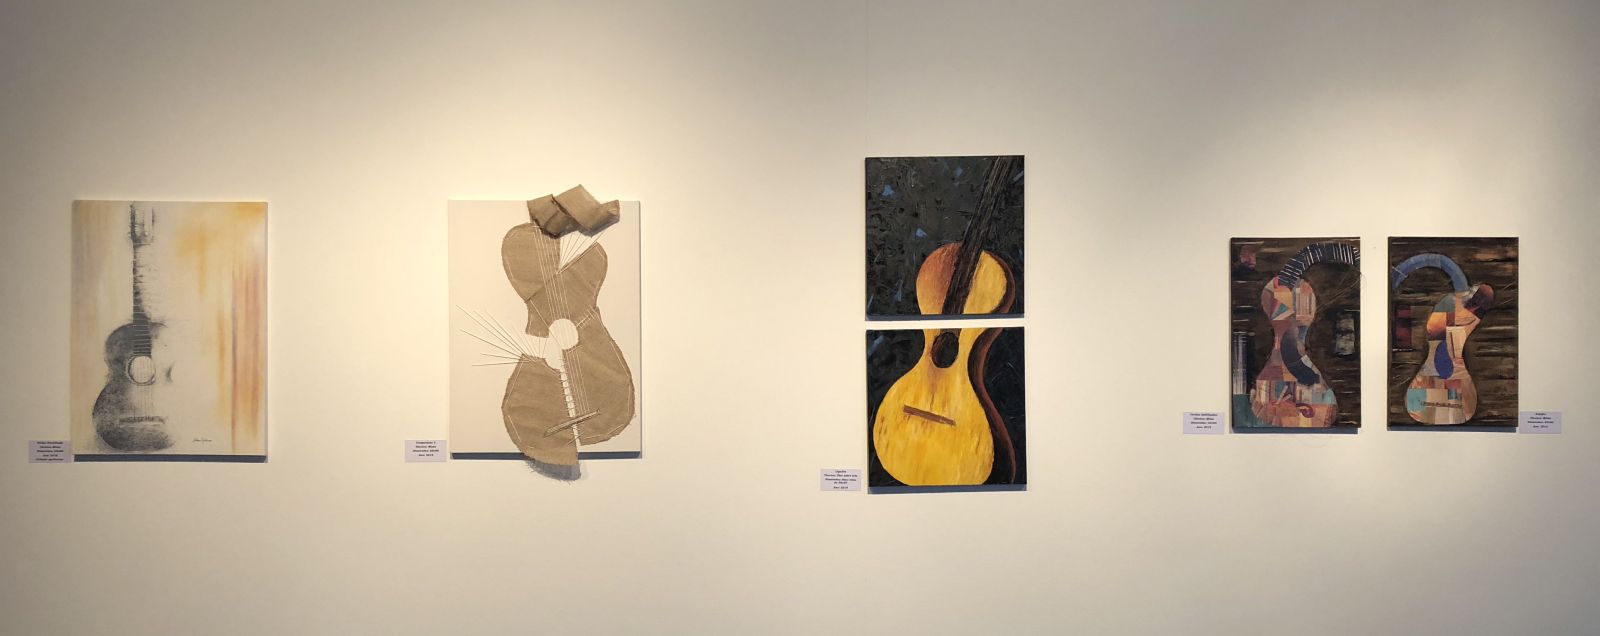 Mostras em São Paulo retratam o violão através da arte e da fotografia